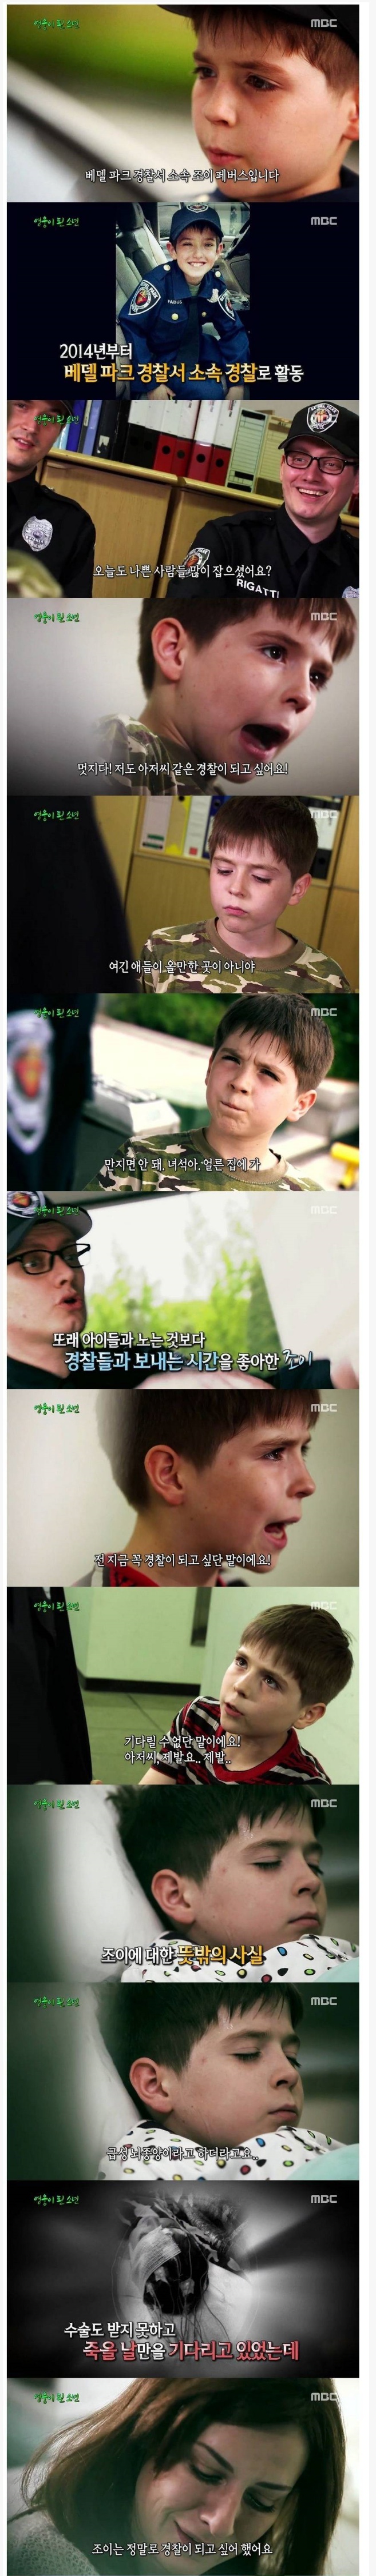  8살짜리 최연소 꼬마 경찰관